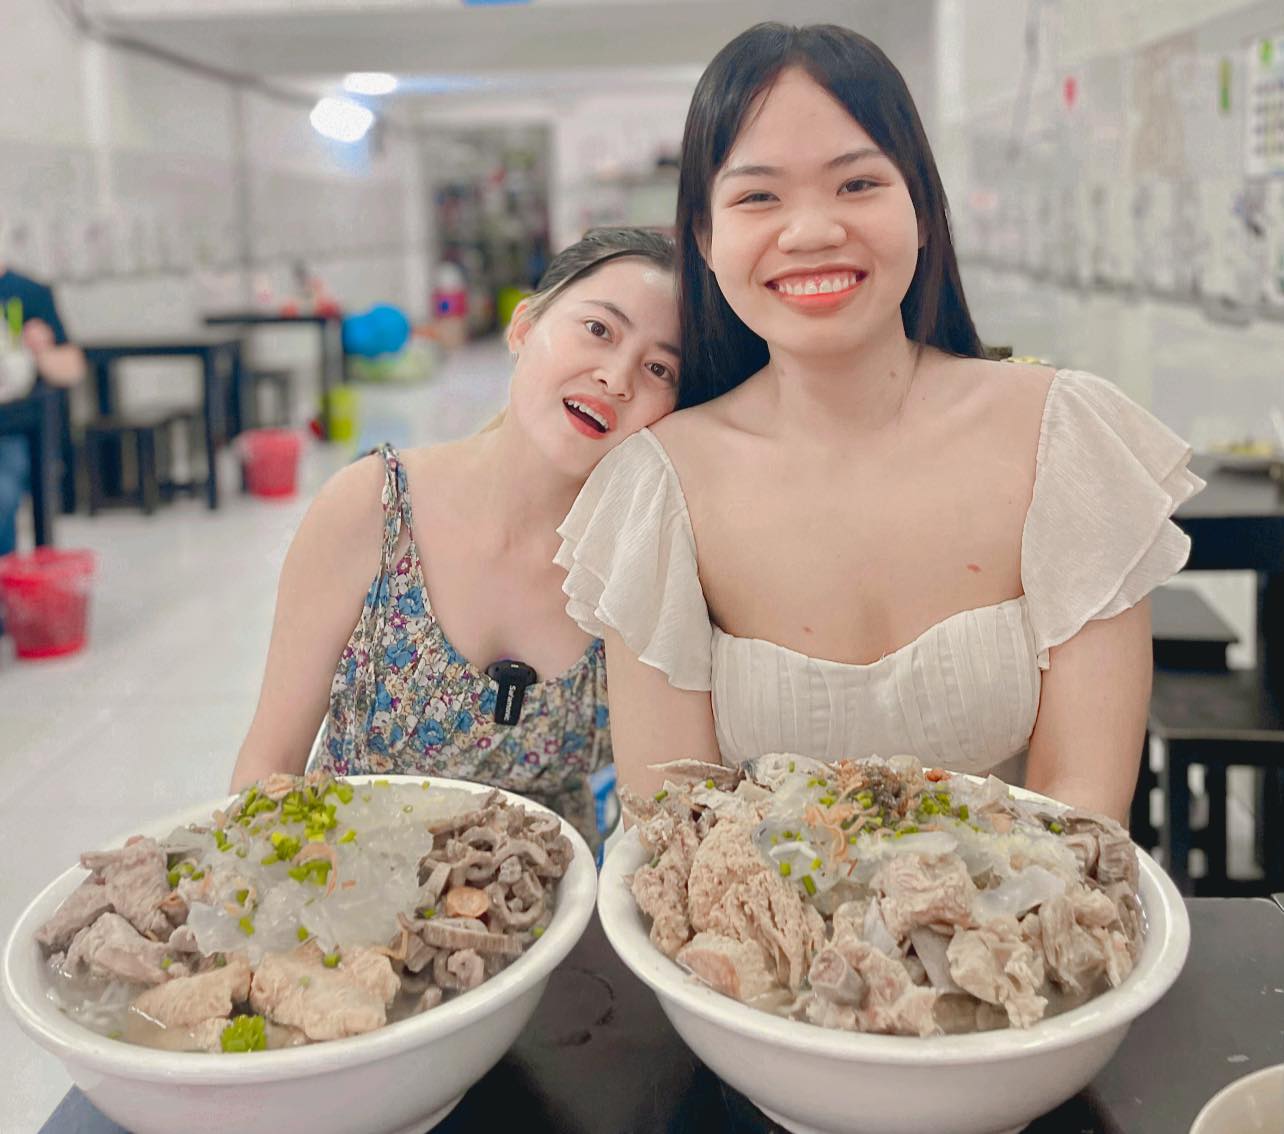 Quán ăn TP HCM tổ chức cuộc thi ăn 2 tô bún chả sứa khổng lồ nhận thưởng 30 triệu đồng và cái kết  - Ảnh 1.